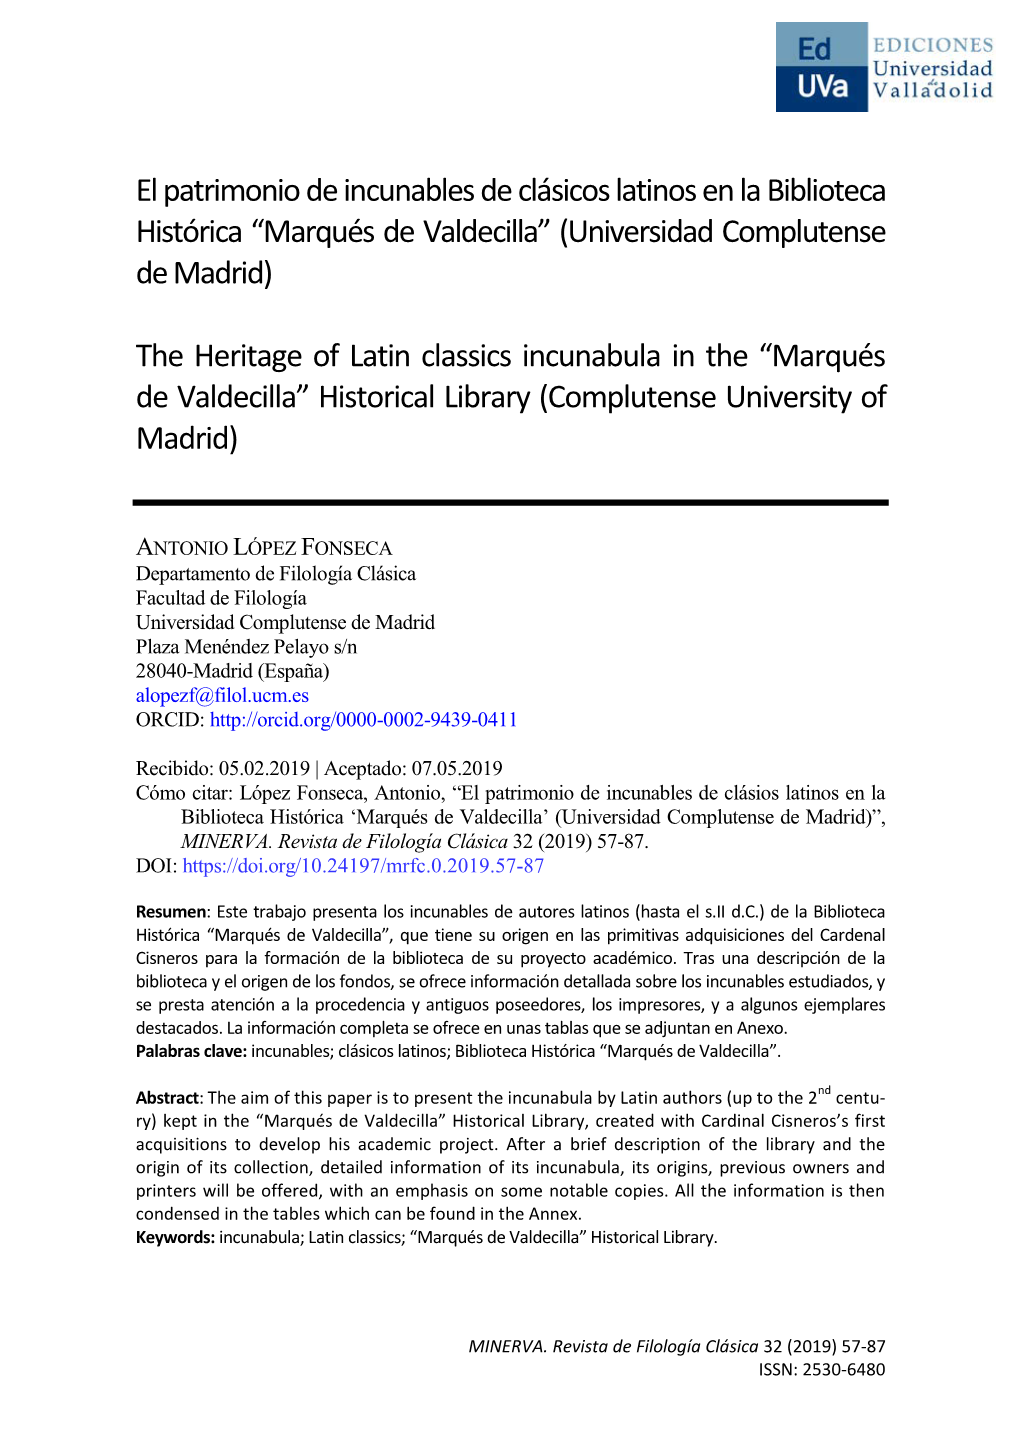 El Patrimonio De Incunables De Clásicos Latinos En La Biblioteca Histórica “Marqués De Valdecilla” (Universidad Complutense De Madrid)